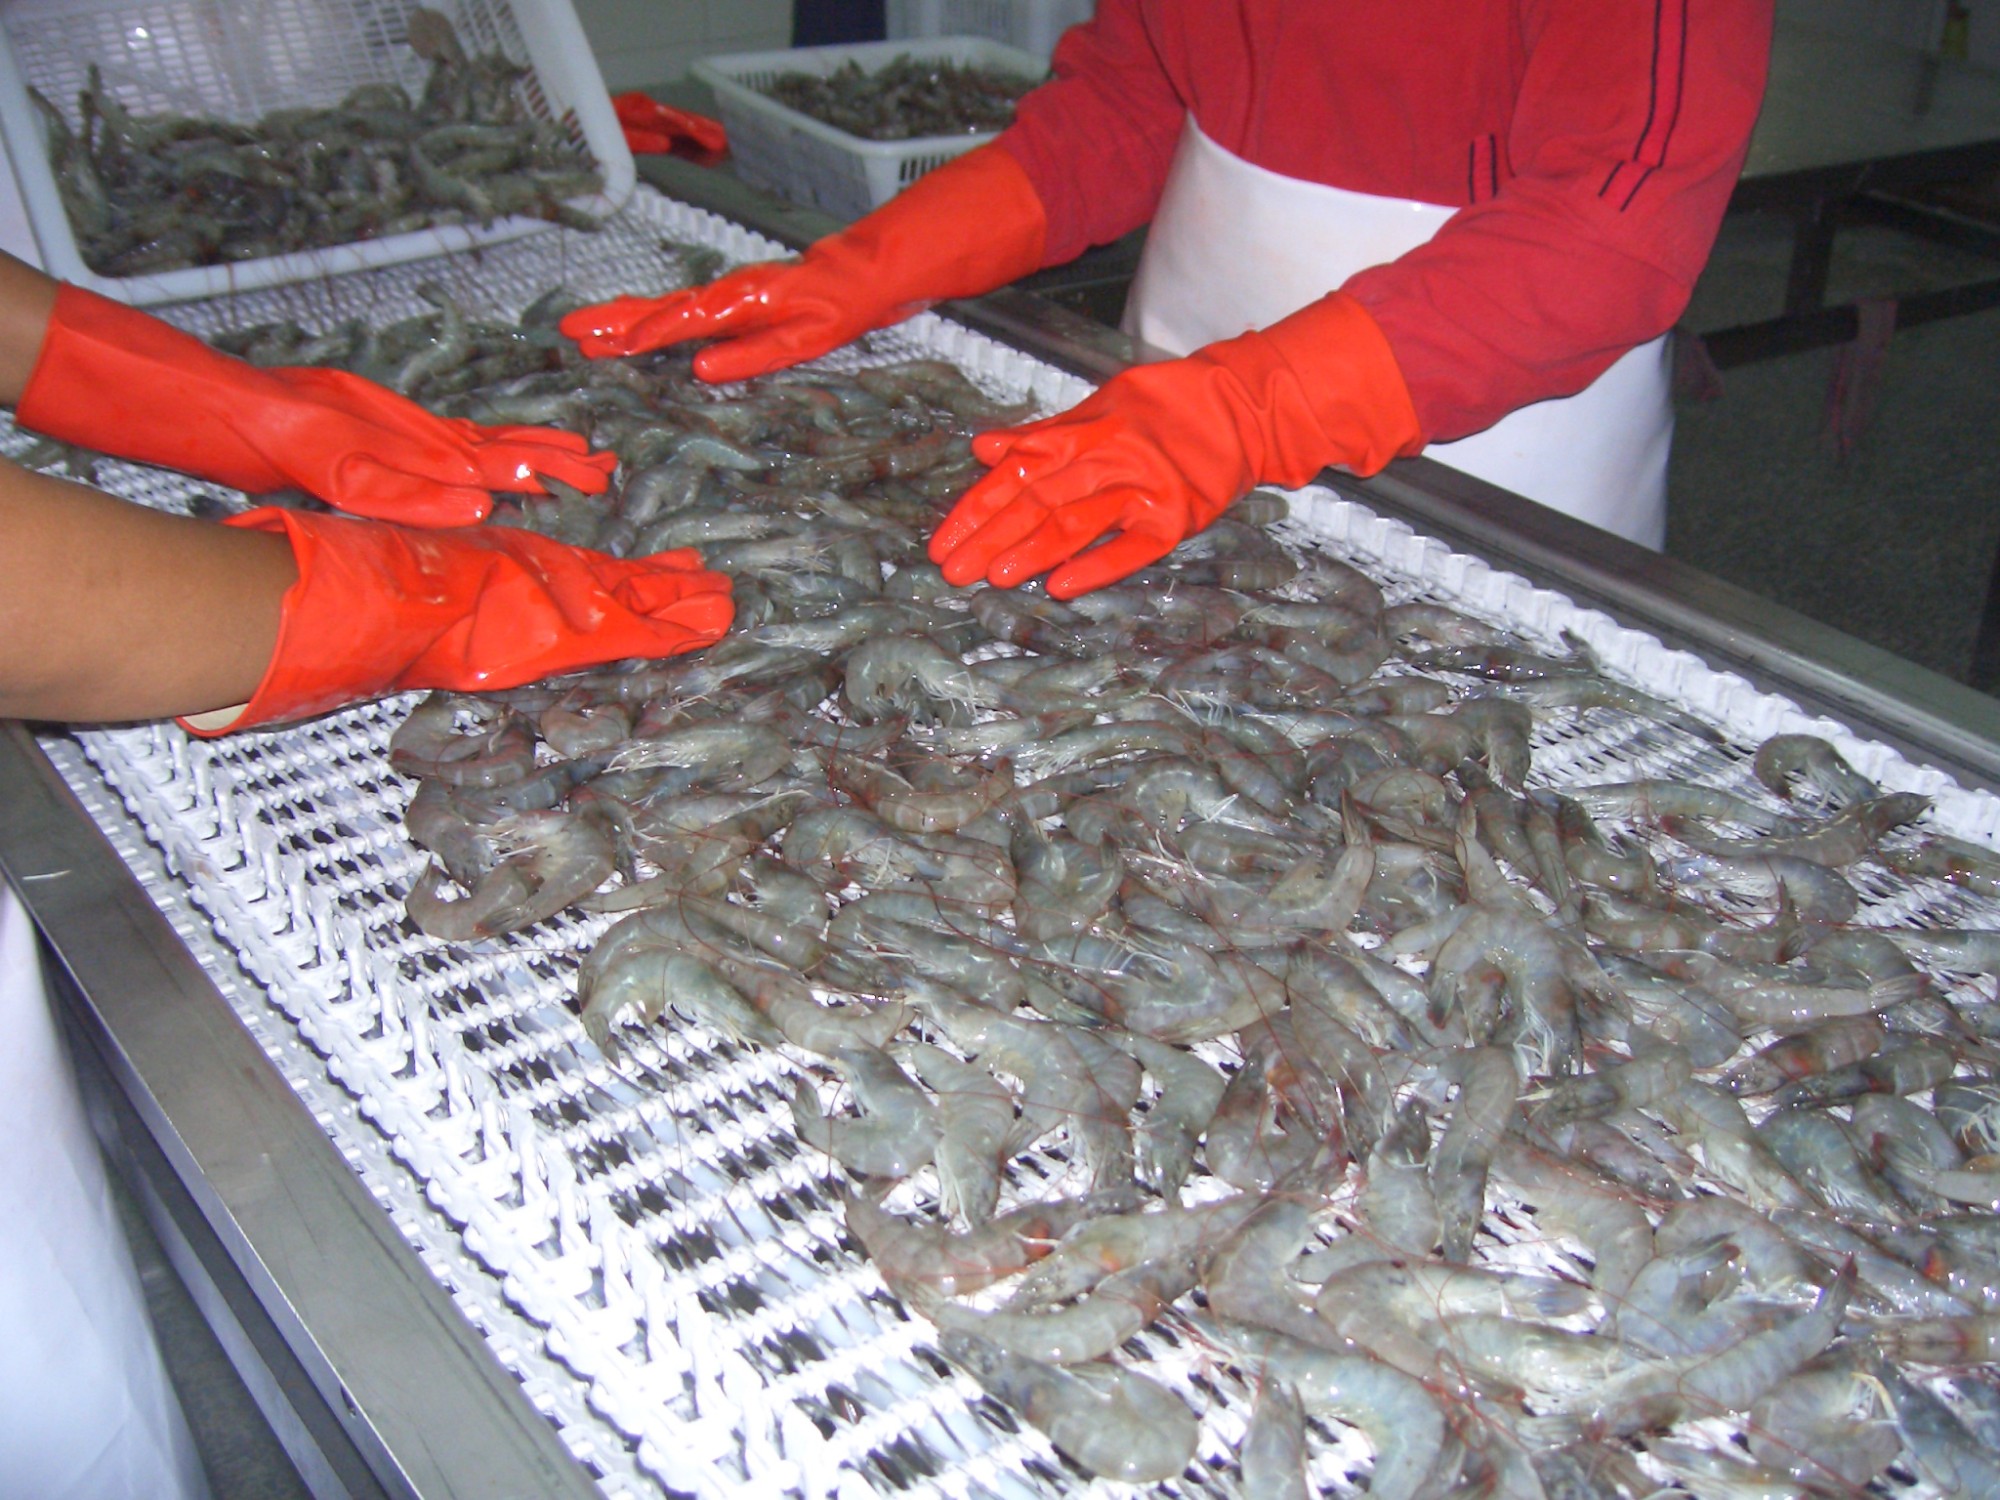 Vásárlás A legkeresettebb spirálfagyasztó halak számára,A legkeresettebb spirálfagyasztó halak számára árak,A legkeresettebb spirálfagyasztó halak számára Márka,A legkeresettebb spirálfagyasztó halak számára Gyártó,A legkeresettebb spirálfagyasztó halak számára Idézetek. A legkeresettebb spirálfagyasztó halak számára Társaság,